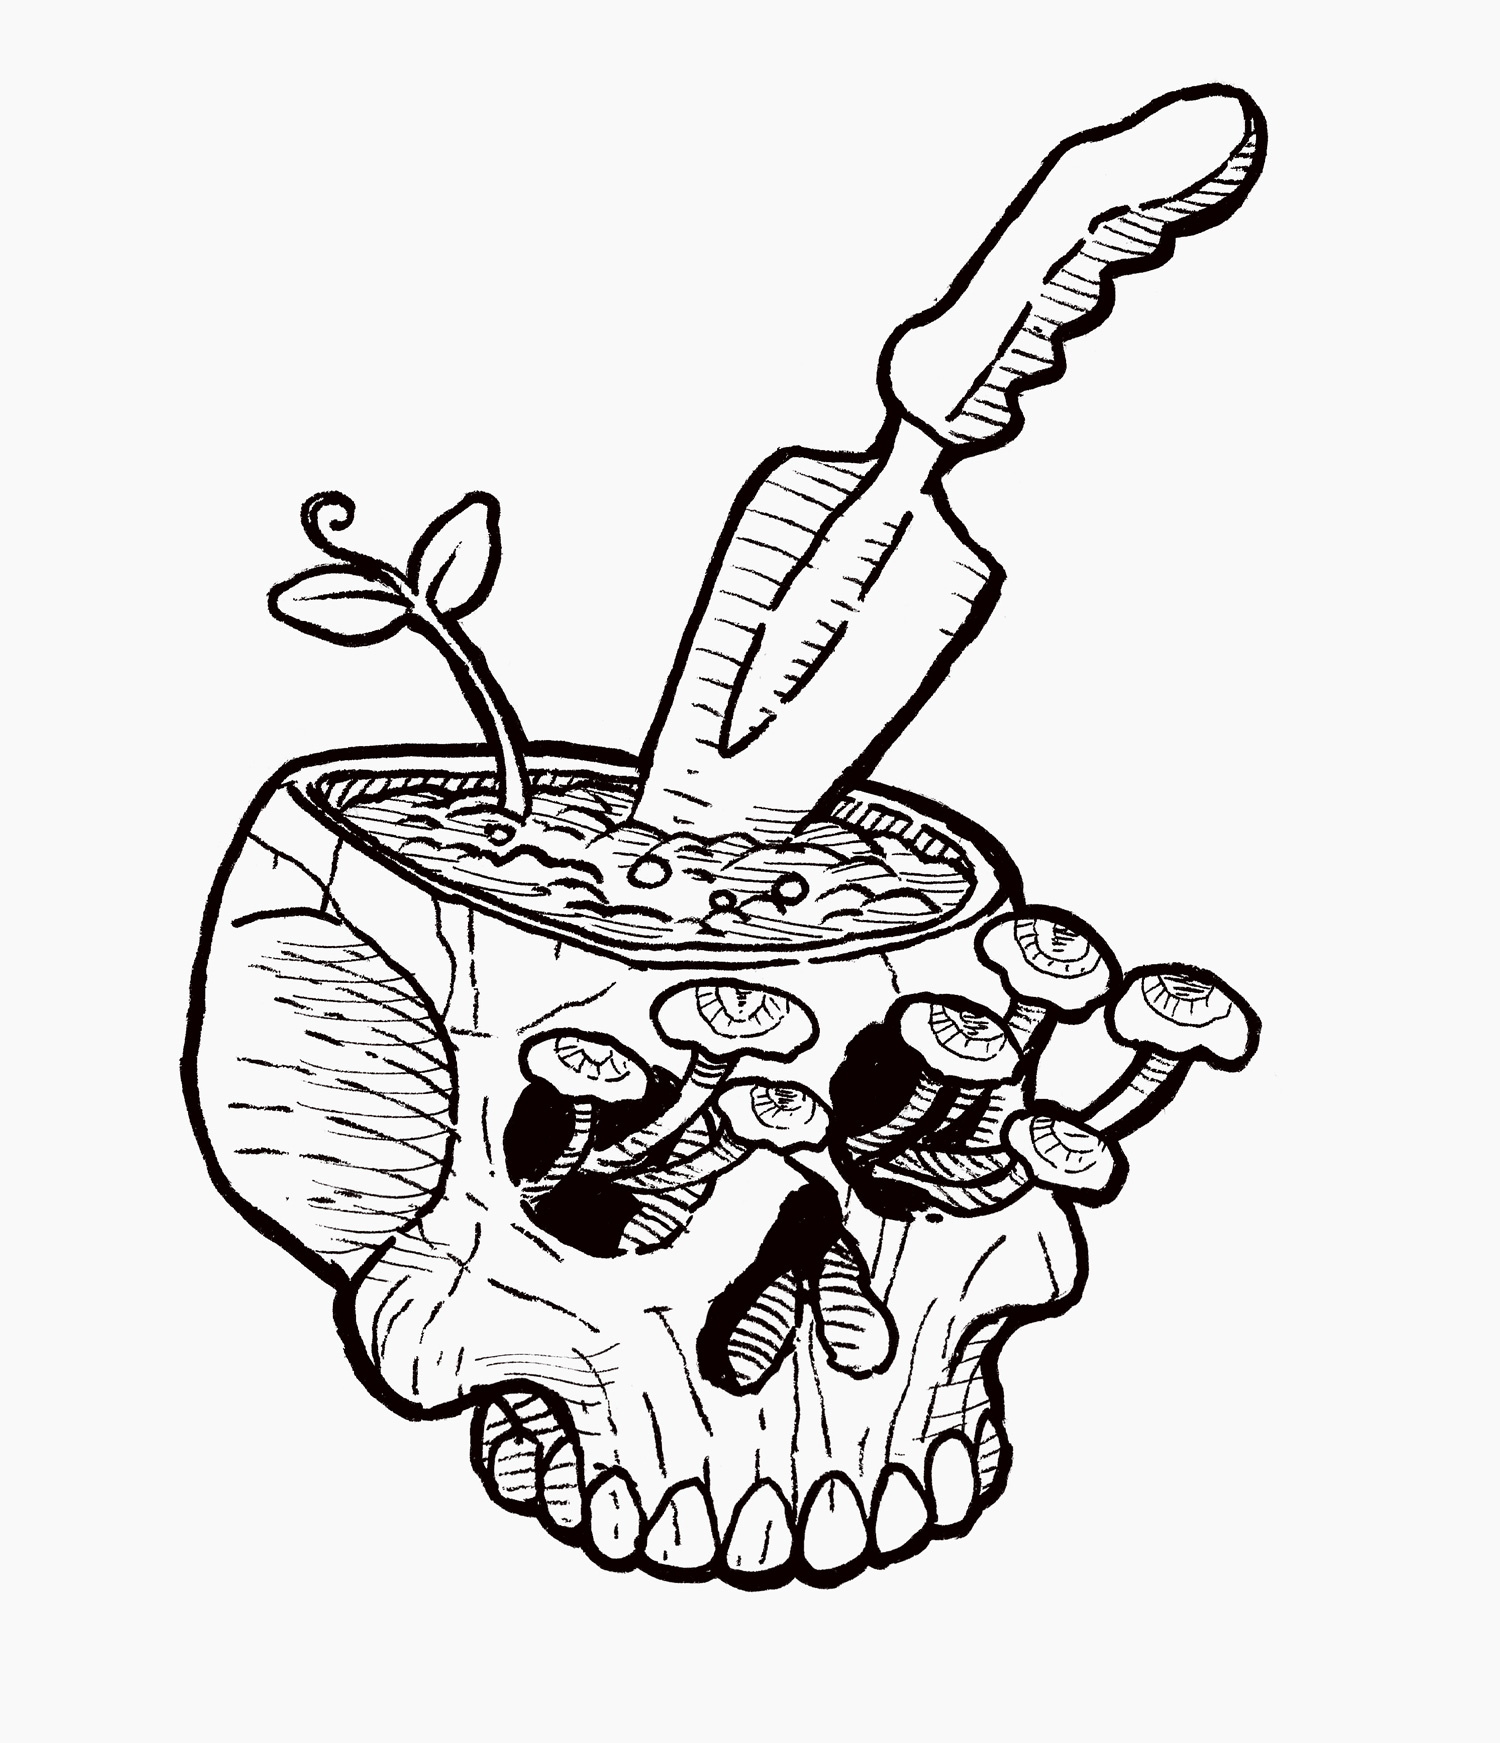 Skull plant pot by Fernando Salvaterra